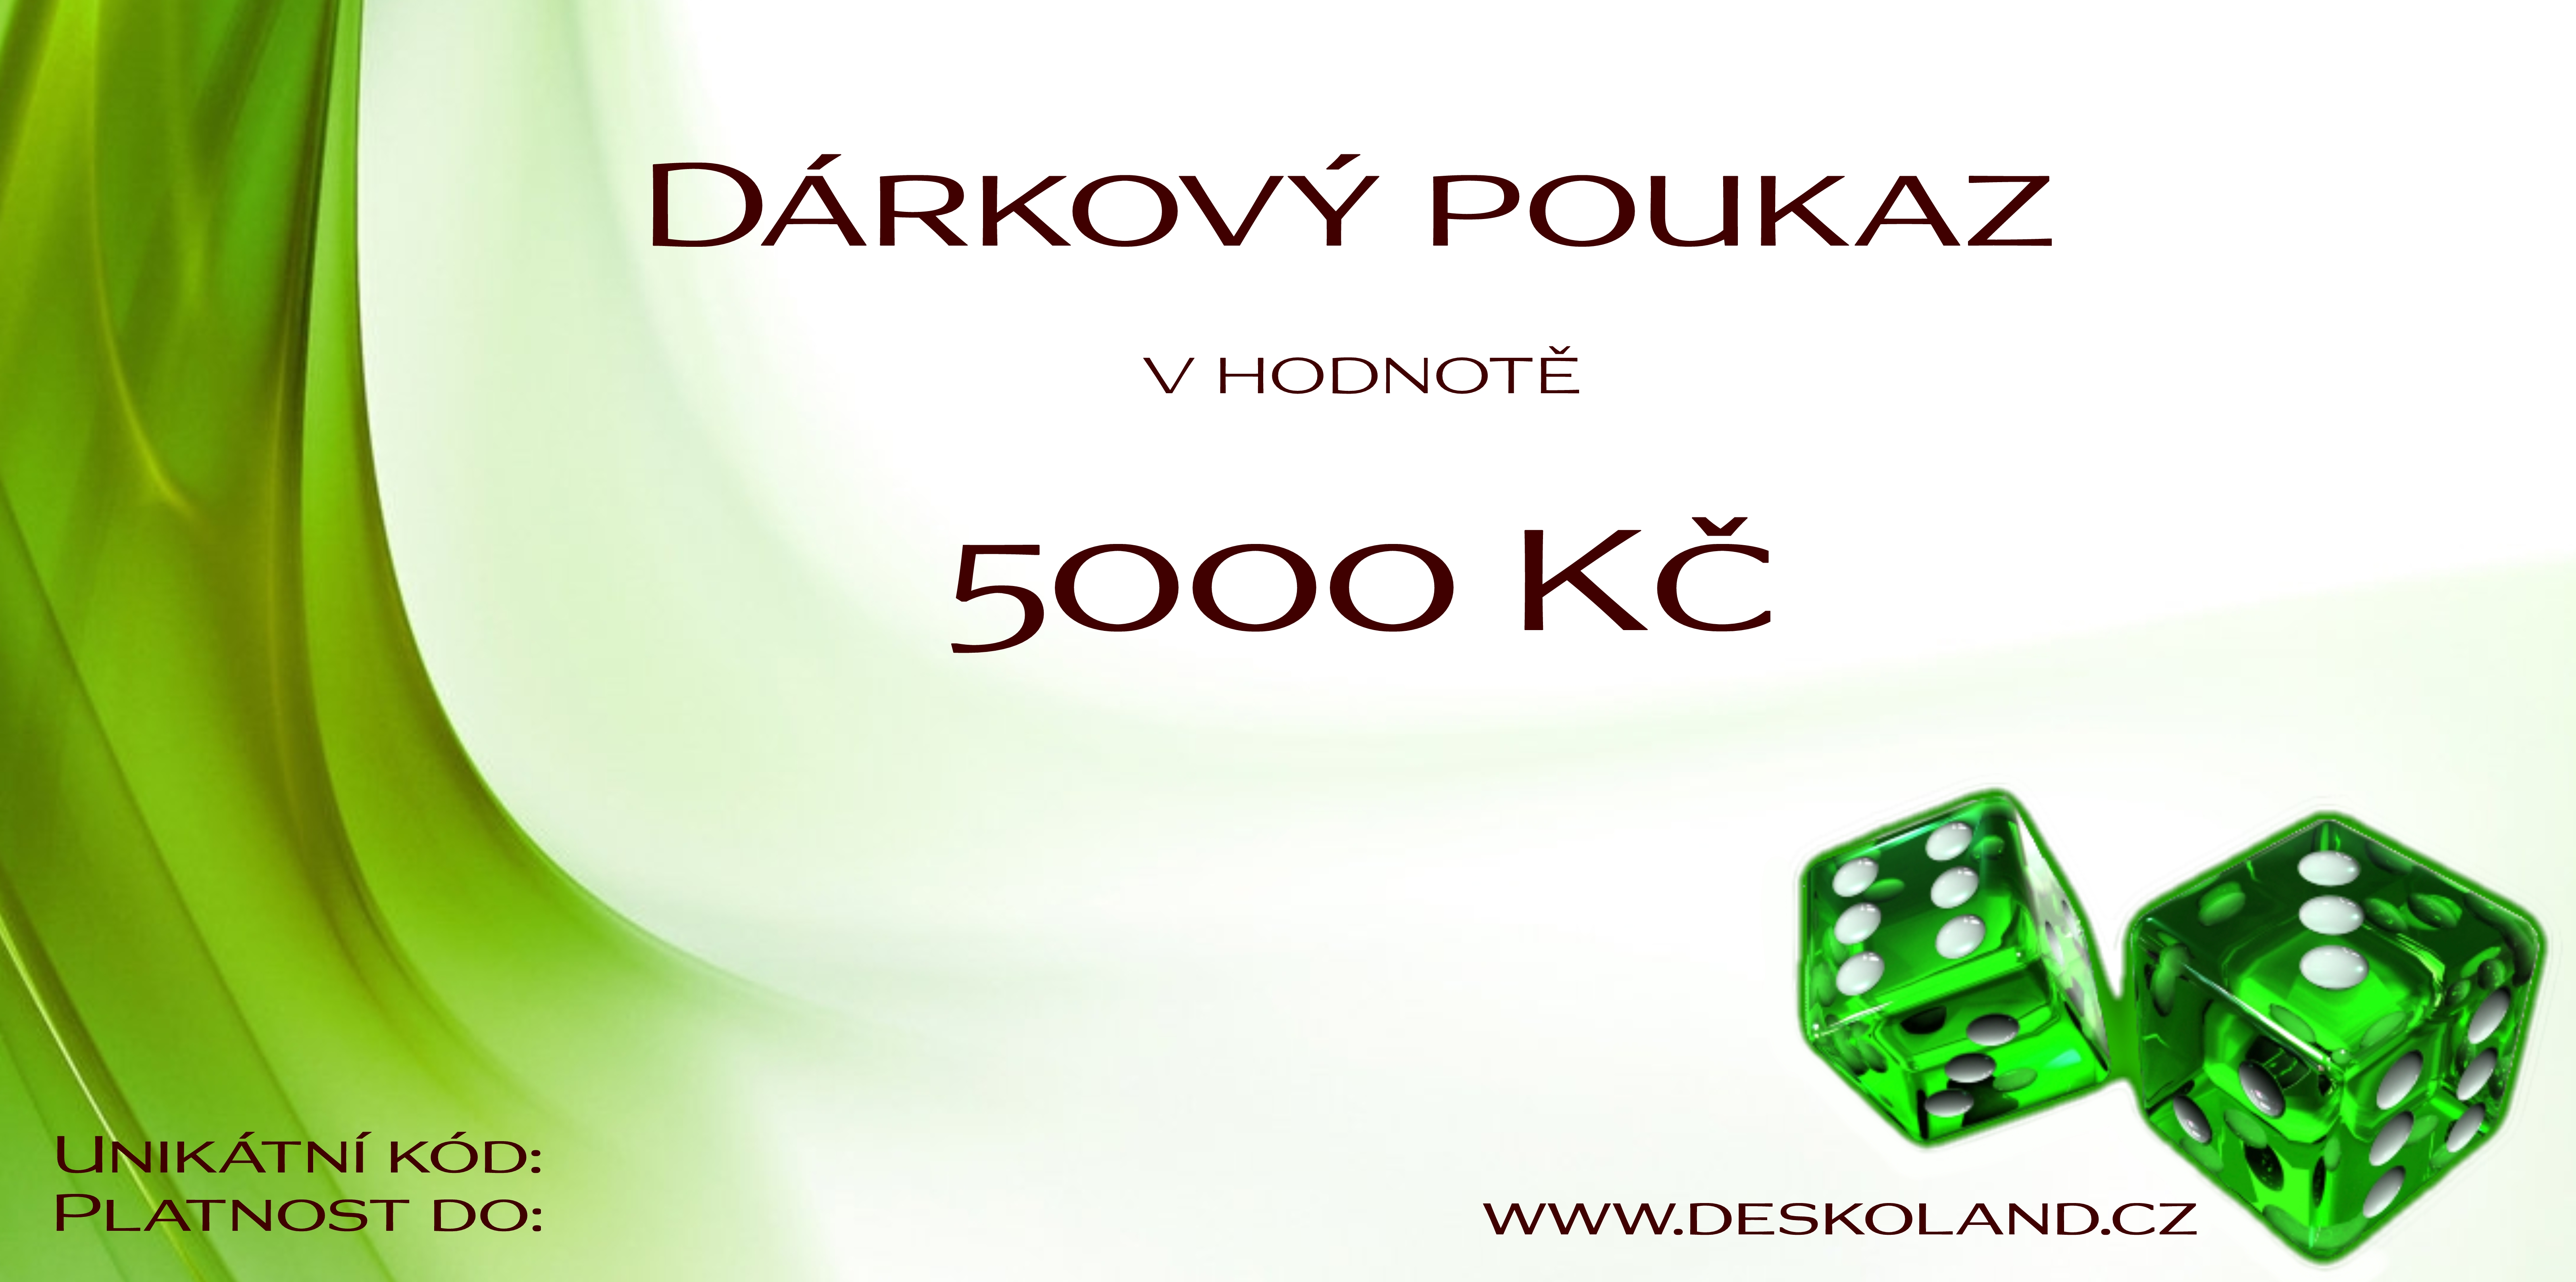 Dárkový poukaz 5000 Kč na Deskoland.cz